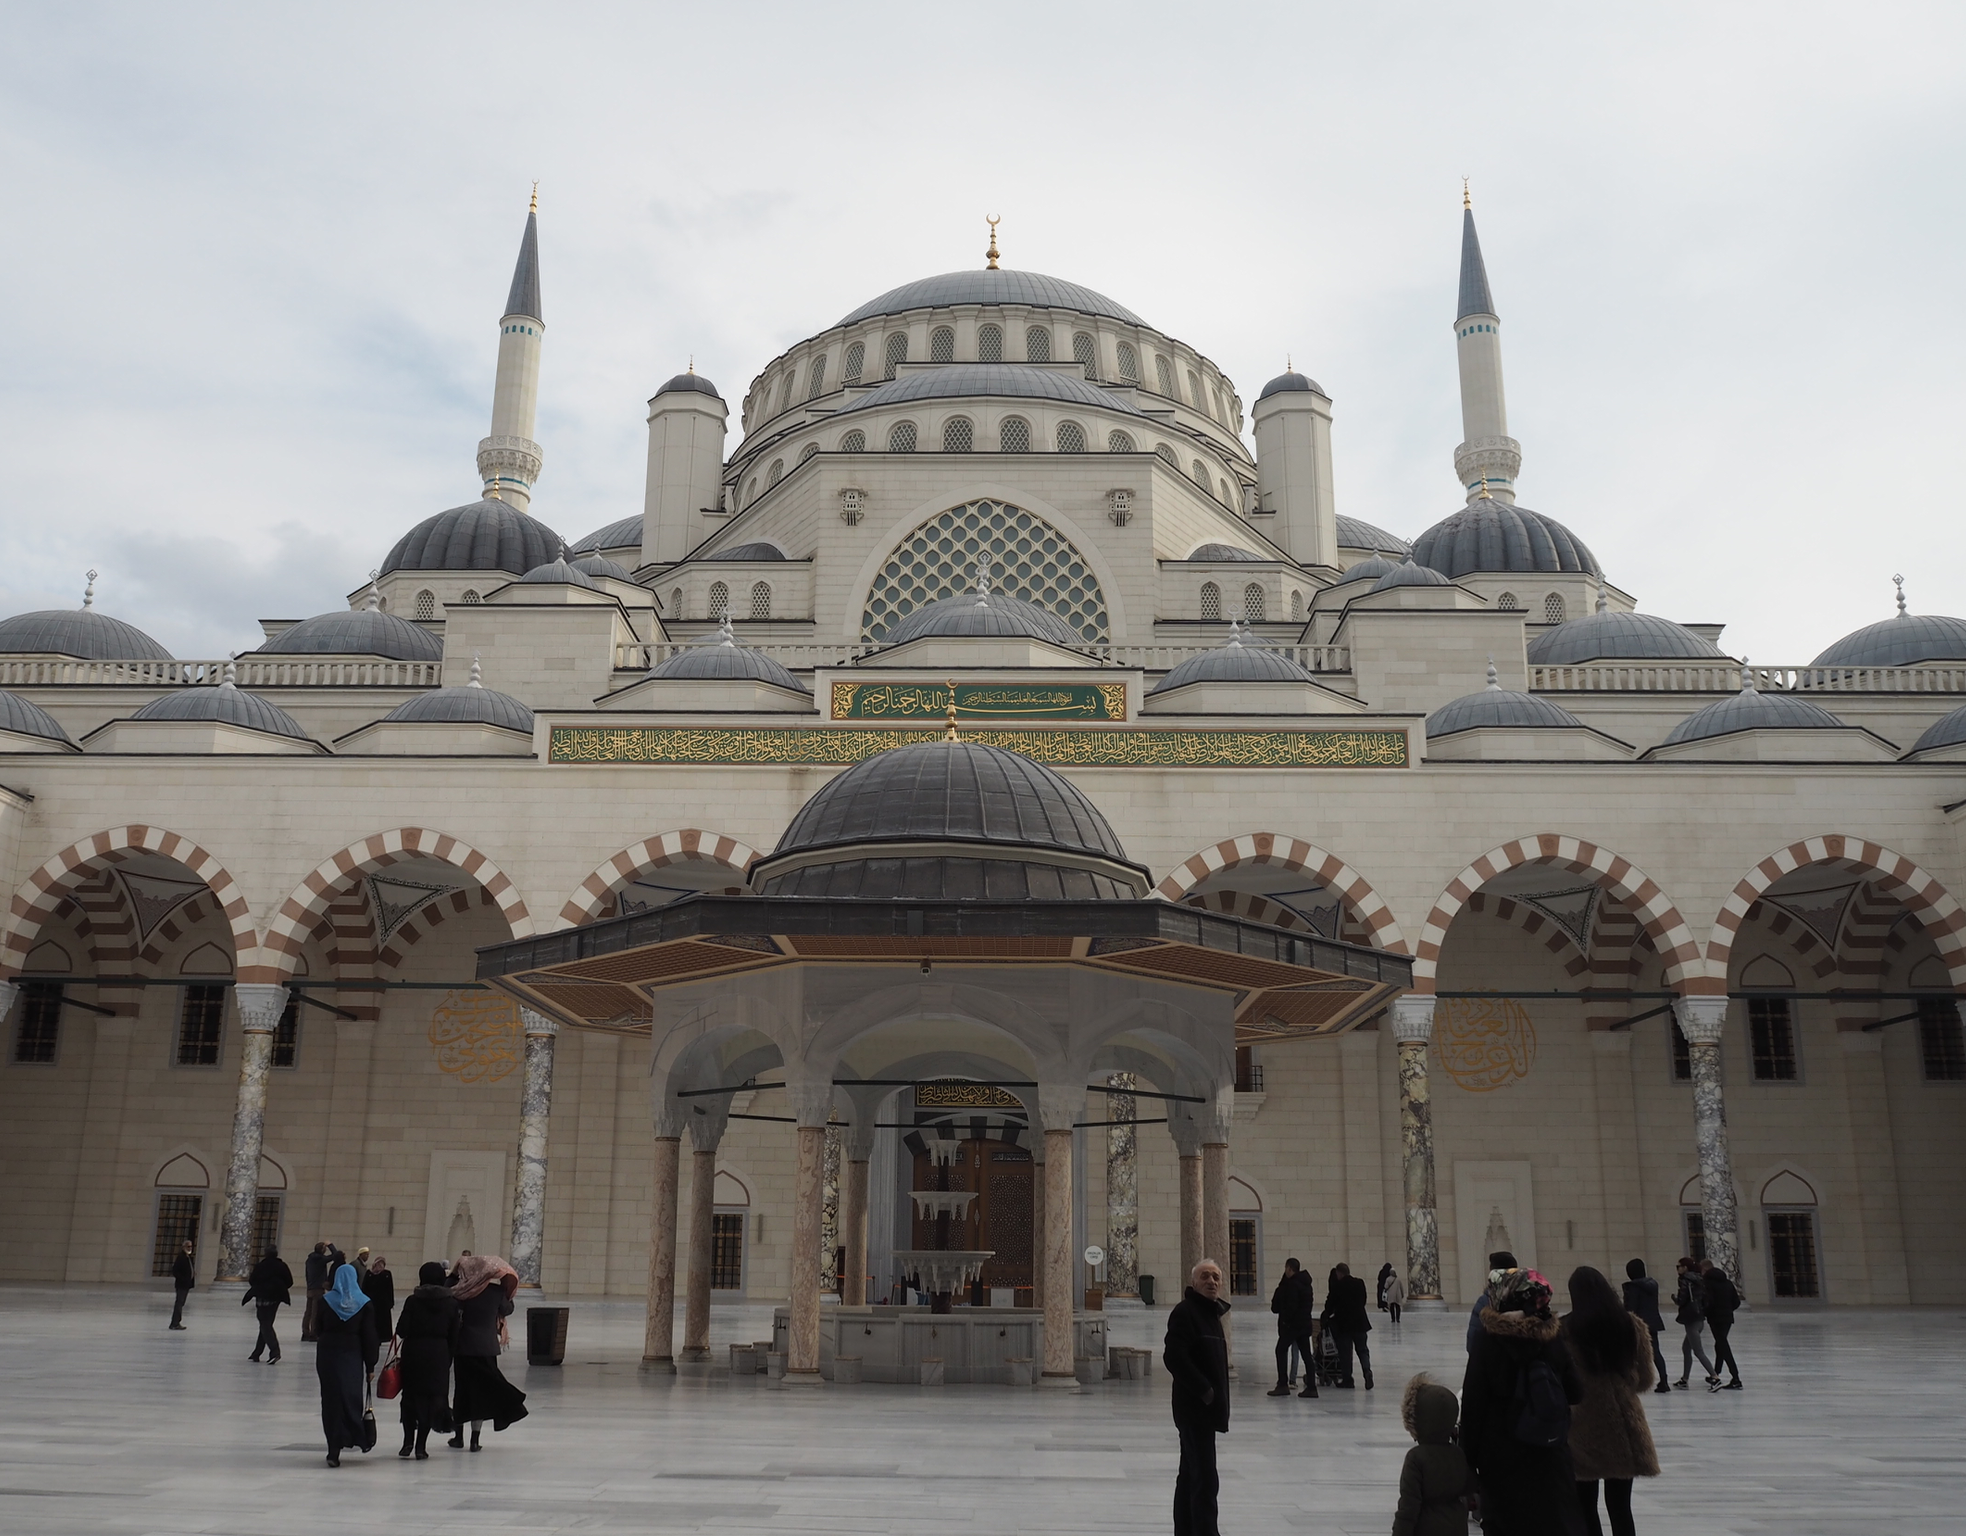 tyrkiets største moske, den største moske i tyrkiet, den største moske i istanbul, erdogans moske, camlica moske, oplevelser i istanbul, seværdigheder i istanbul, arkitektur i istanbul, dansk i tyrkiet, oplevelser i tyrkiet, oplev tyrkiet, moskeer i istanbul, moskeer i tyrkiet